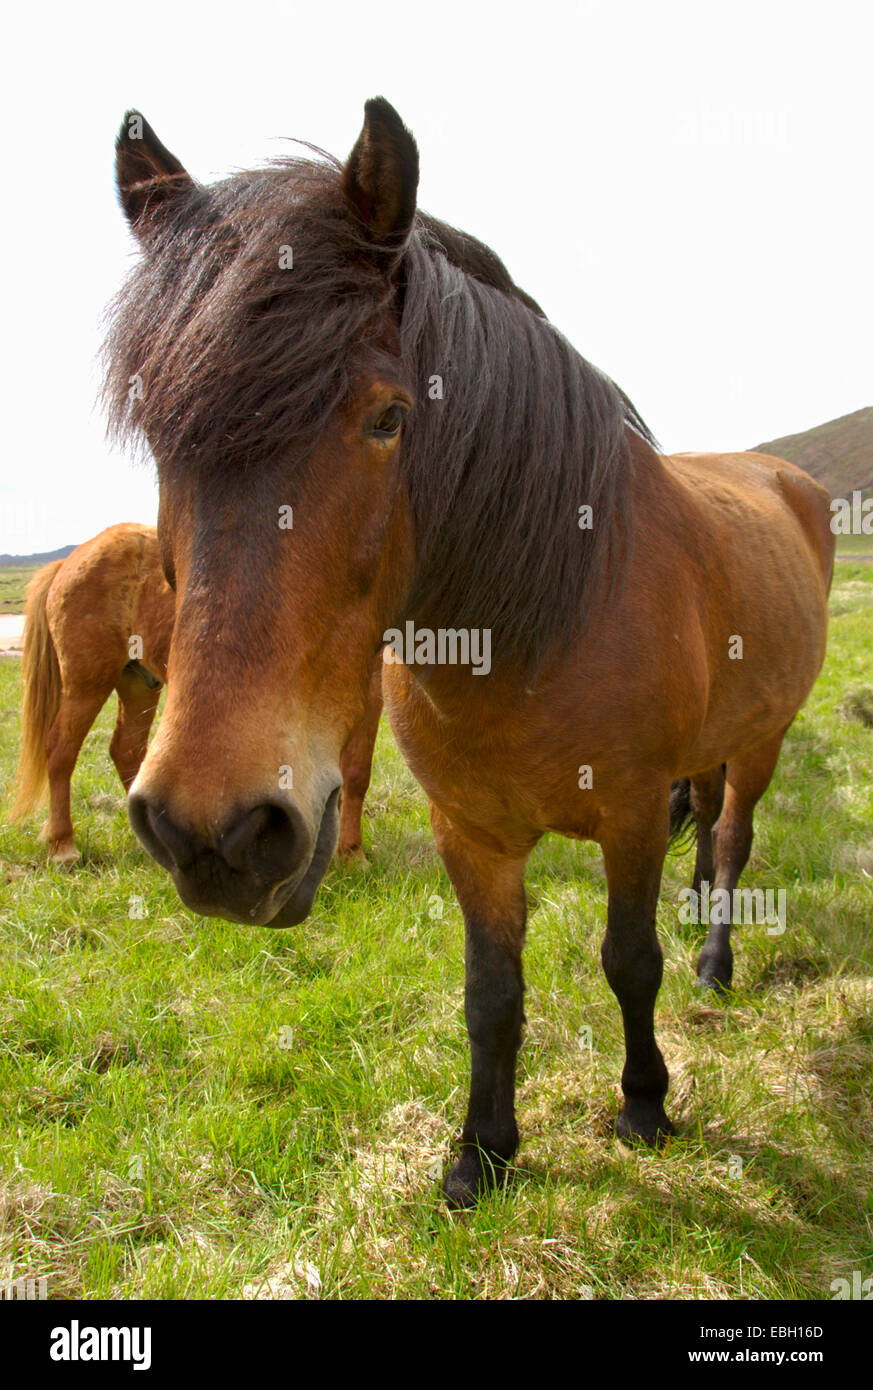 Islandic horse, Iceland pony (Equus przewalskii f. caballus), wideangle photography, Iceland Stock Photo